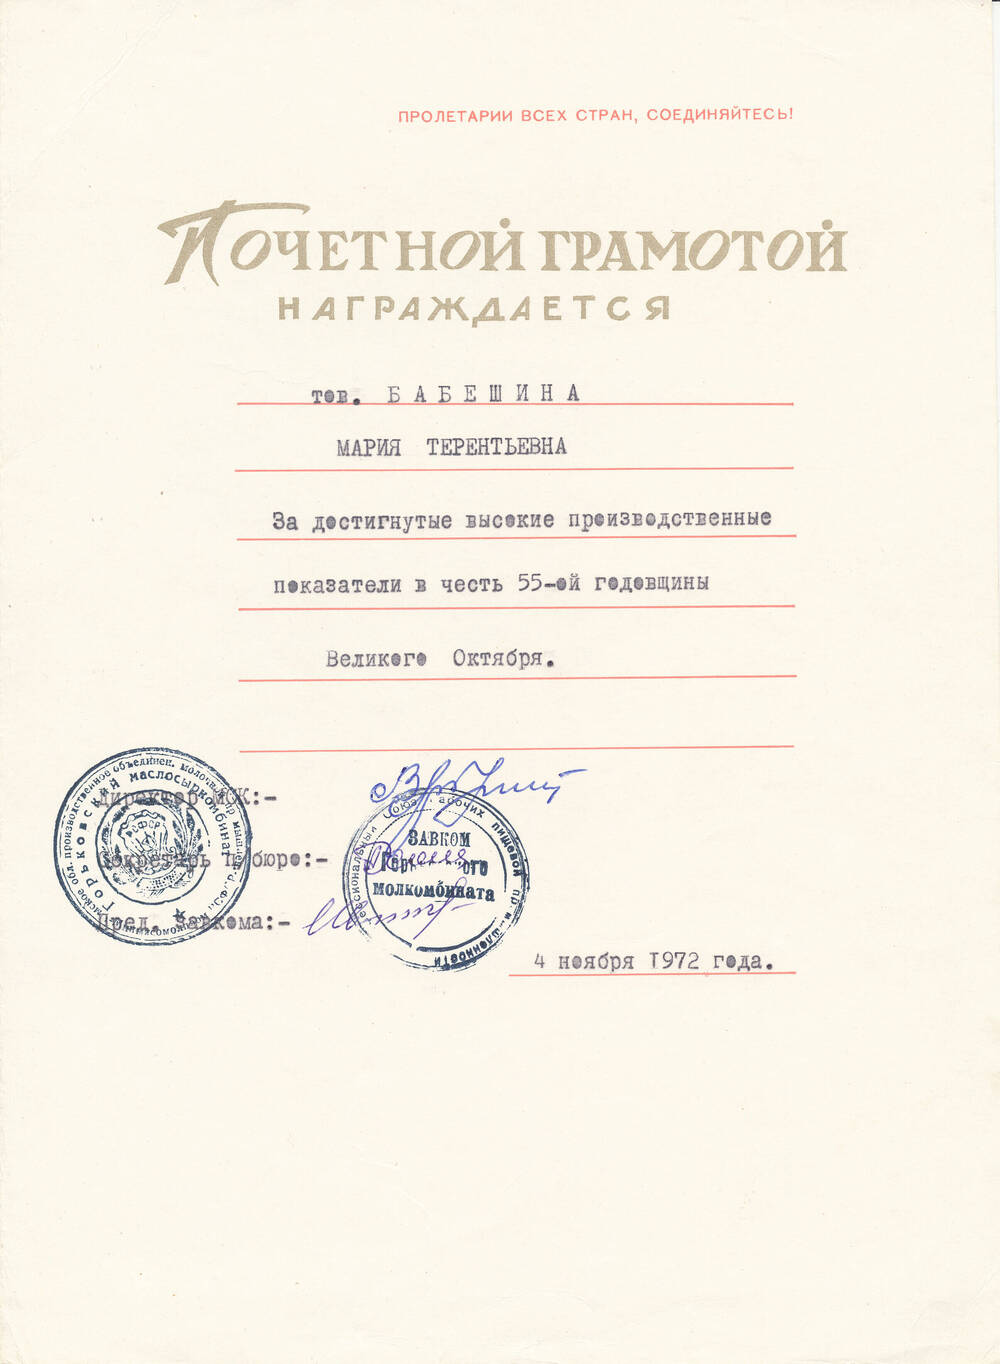 Почетная грамота Бабешкиной Марии Терентьевны от администрации молкомбината от 4.11.1972 года за достигнутые высокие показатели